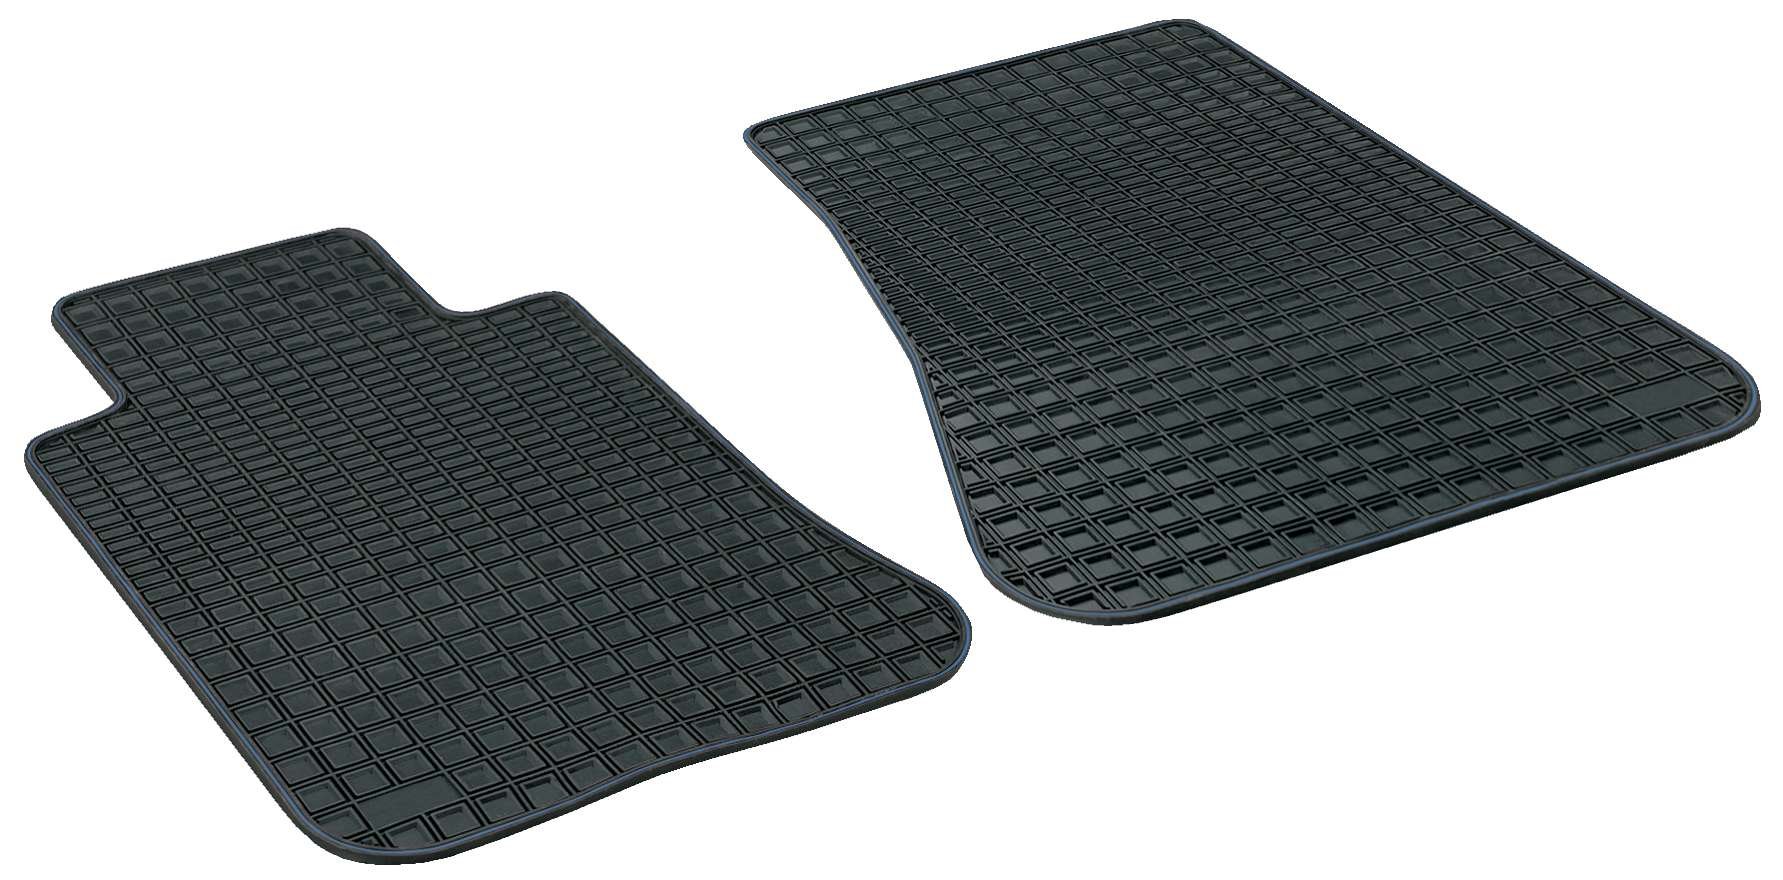 Rubber mats for Blueline Premium size 4